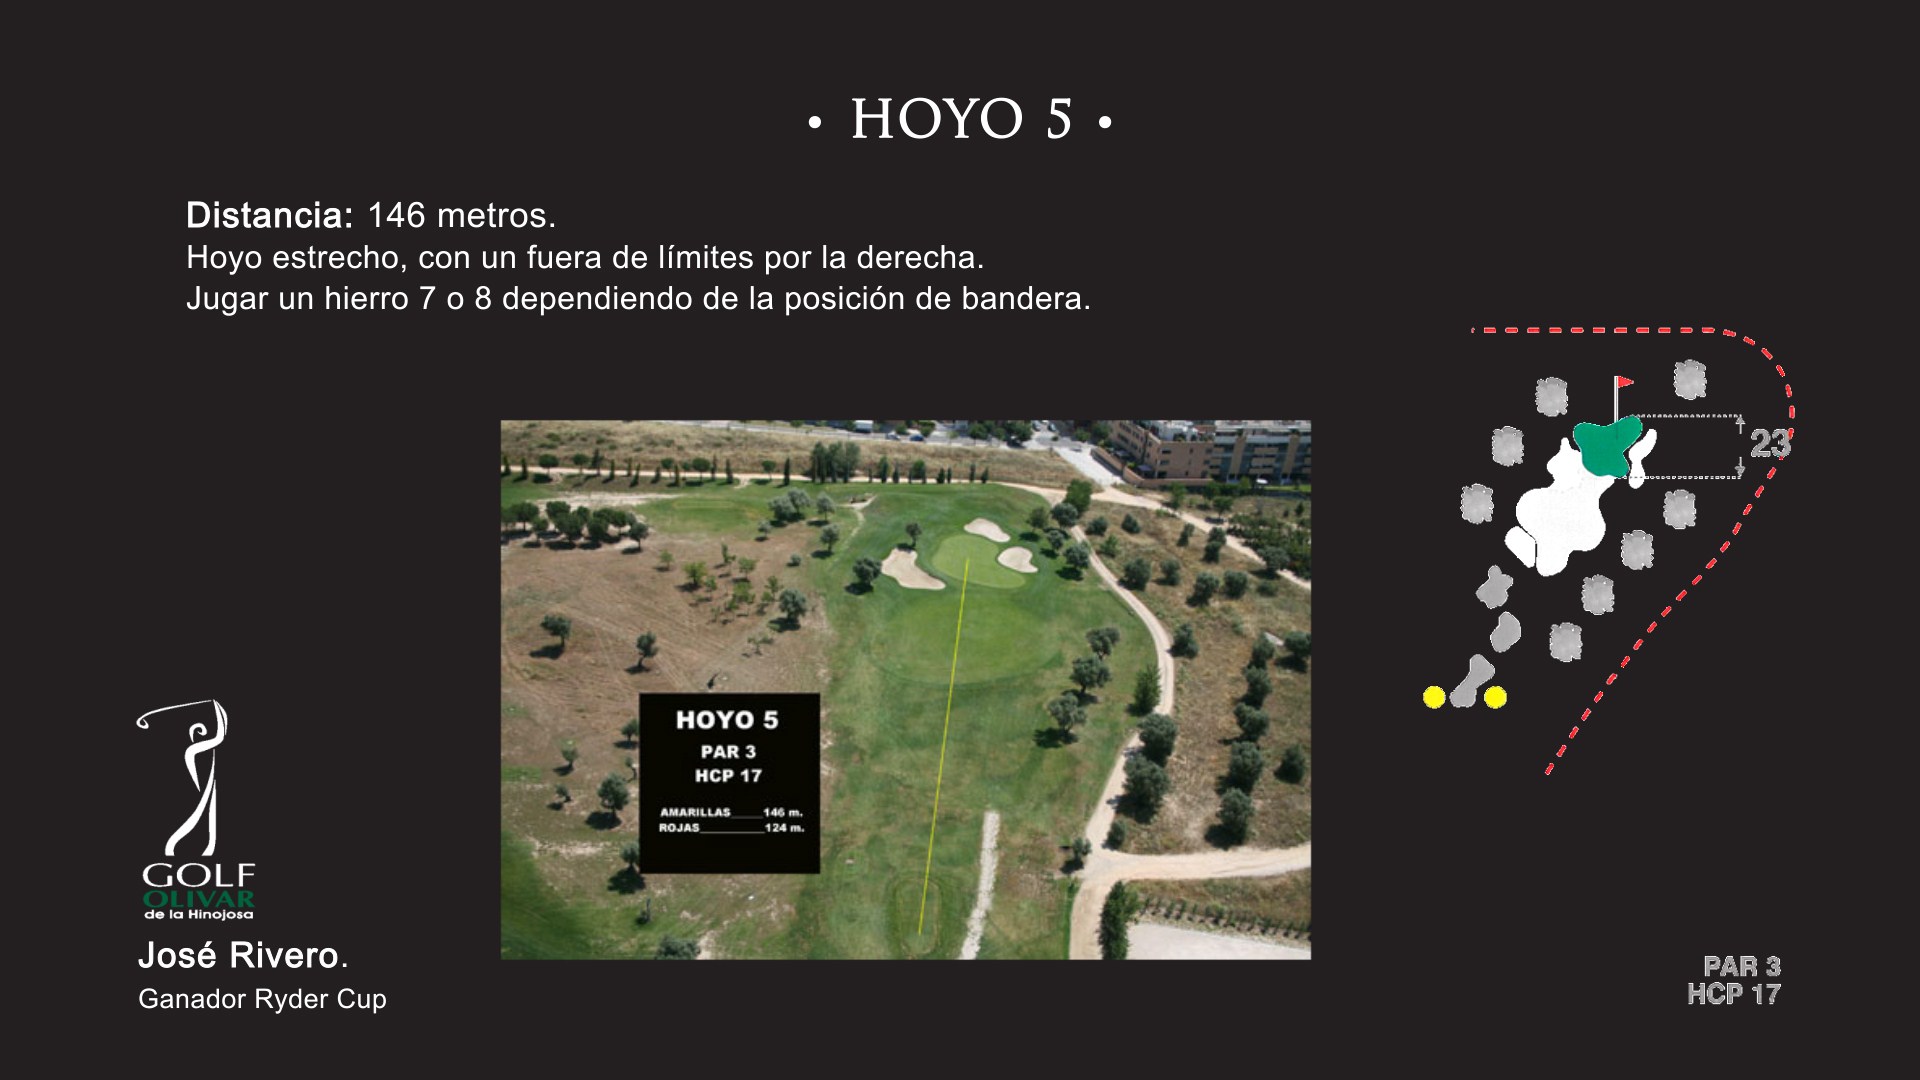 Hoyo 5 Olivar de la Hinojosa